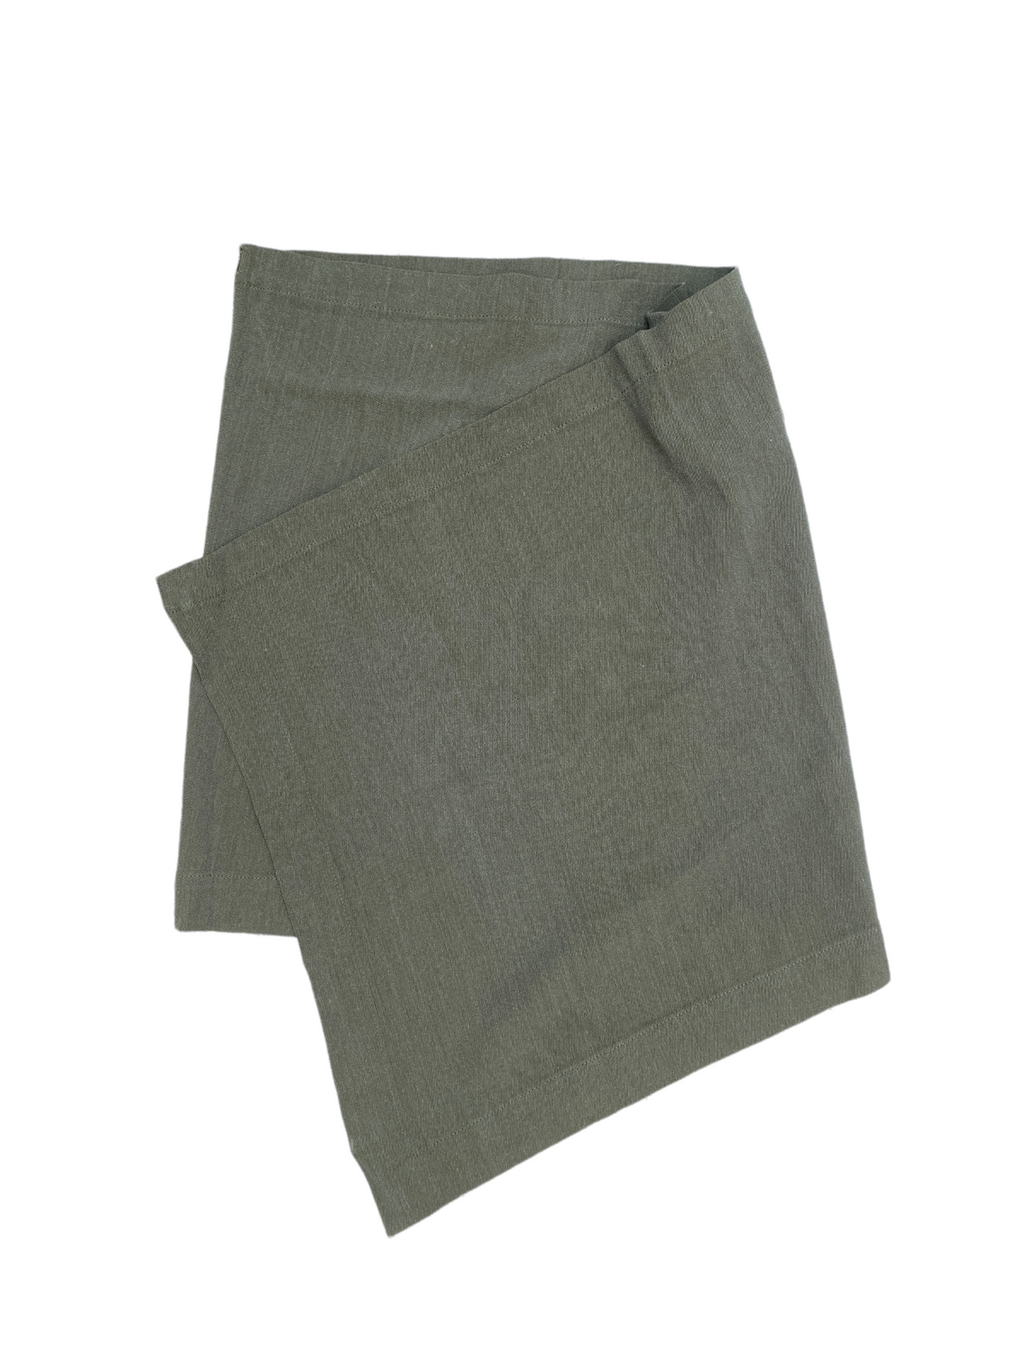 Vintage Kaki Linen Skirt